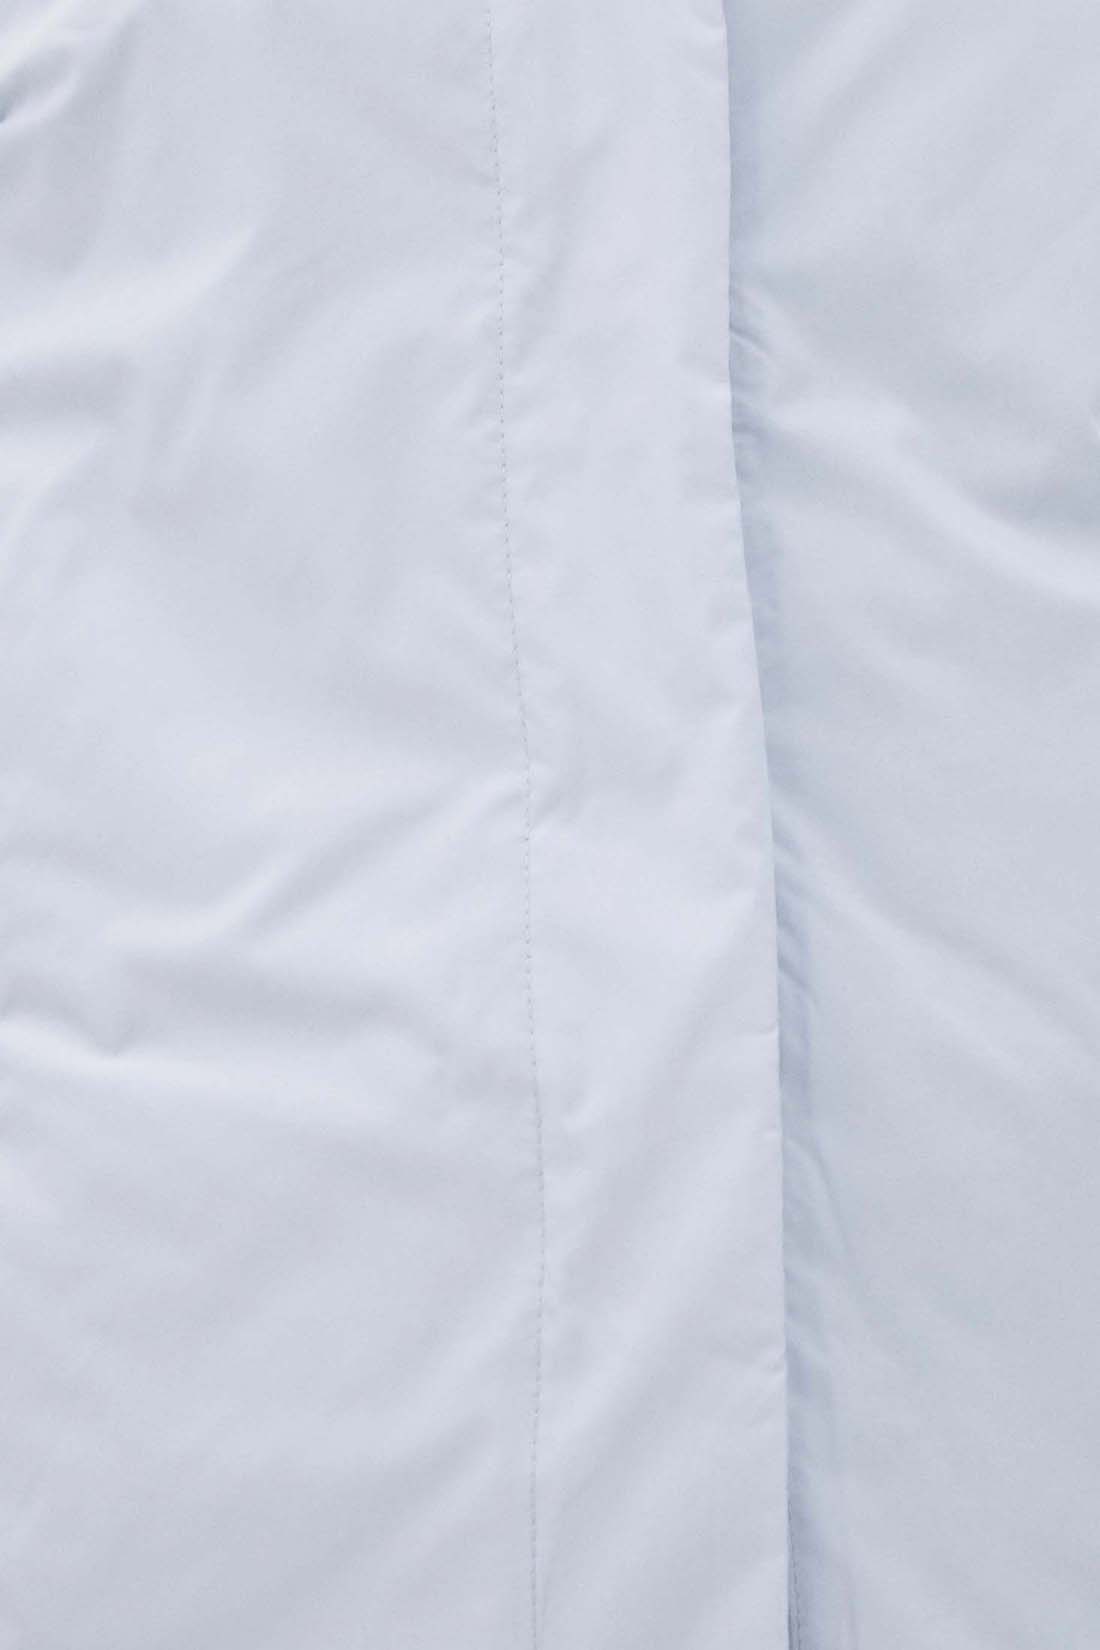 Куртка (арт. baon B031057), размер M, цвет голубой Куртка (арт. baon B031057) - фото 3